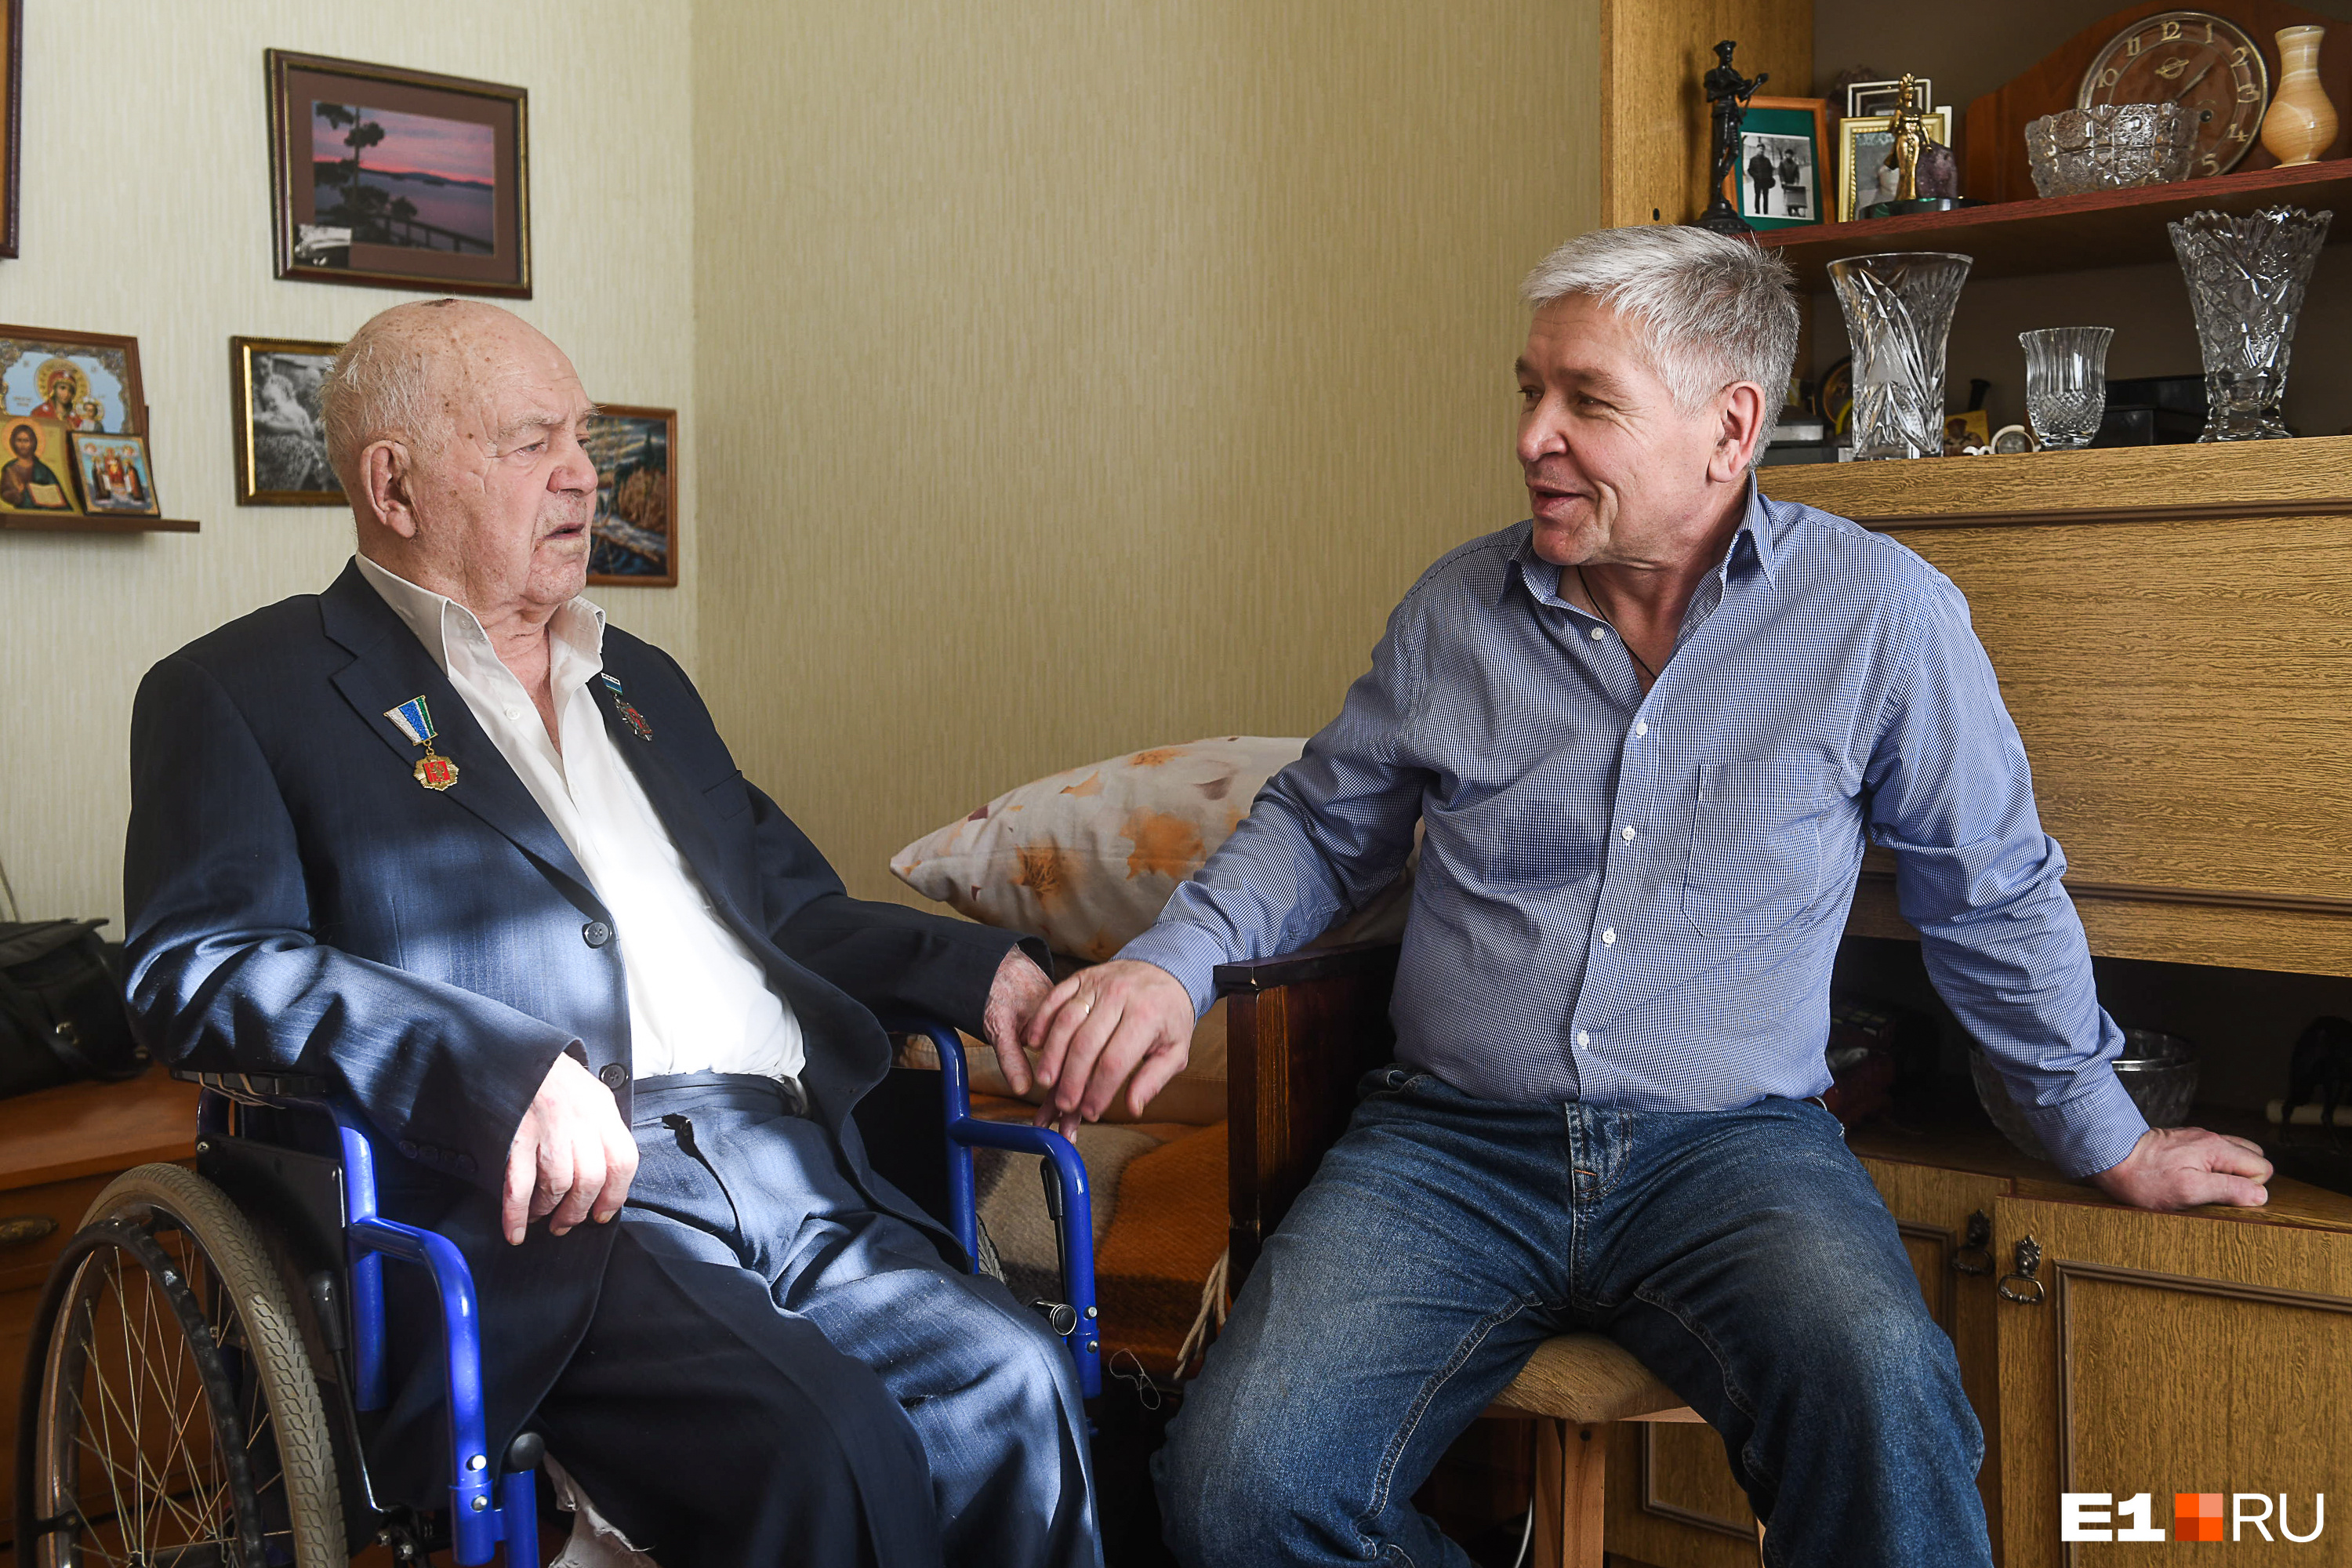 Композитор с сыном Романом, руководителем фонда «Уральская рябинушка», созданного, чтобы рассказывать о творчестве Родыгина